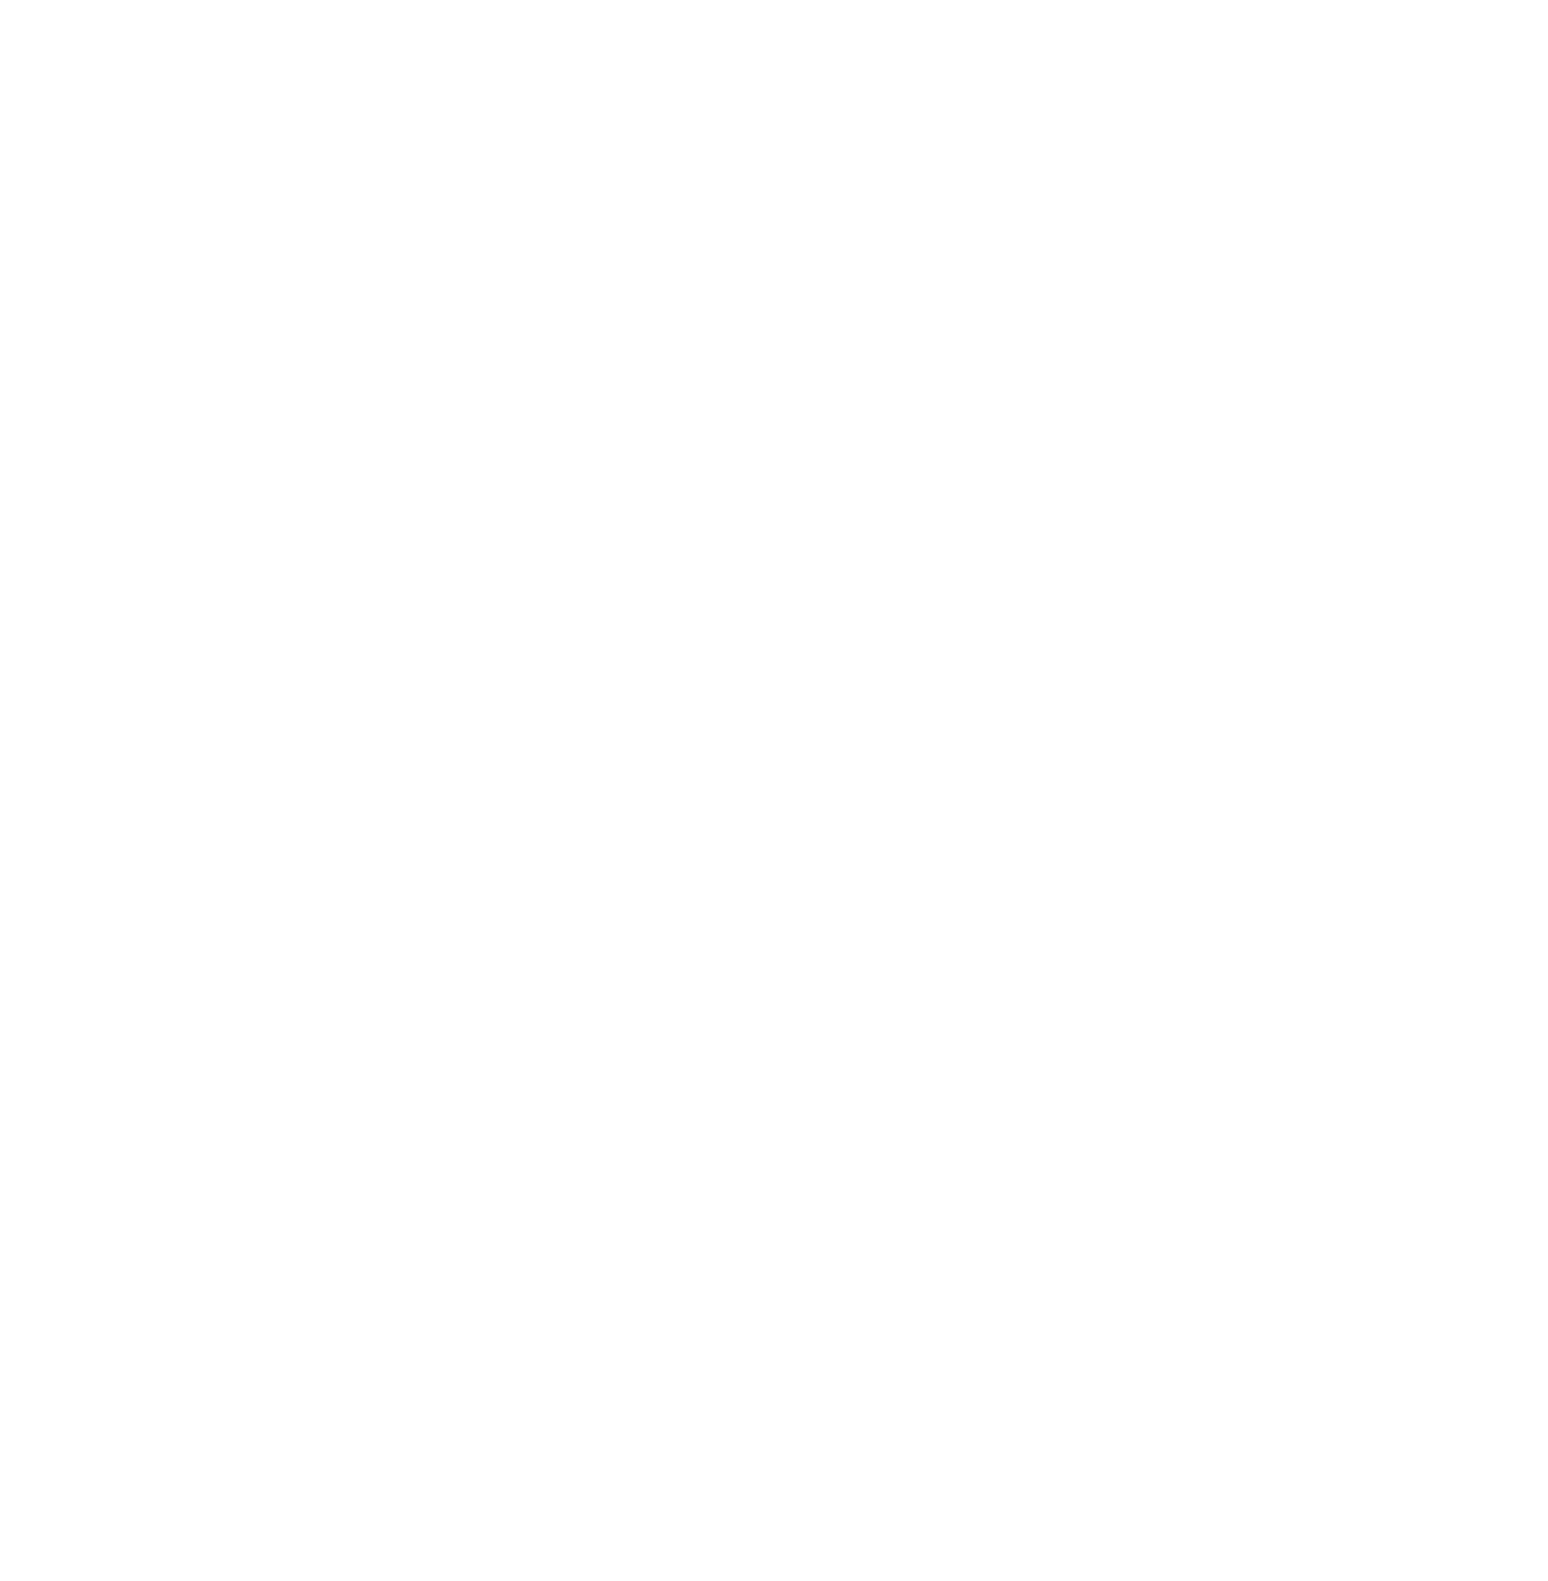 Sonoco logo grand pour les fonds sombres (PNG transparent)